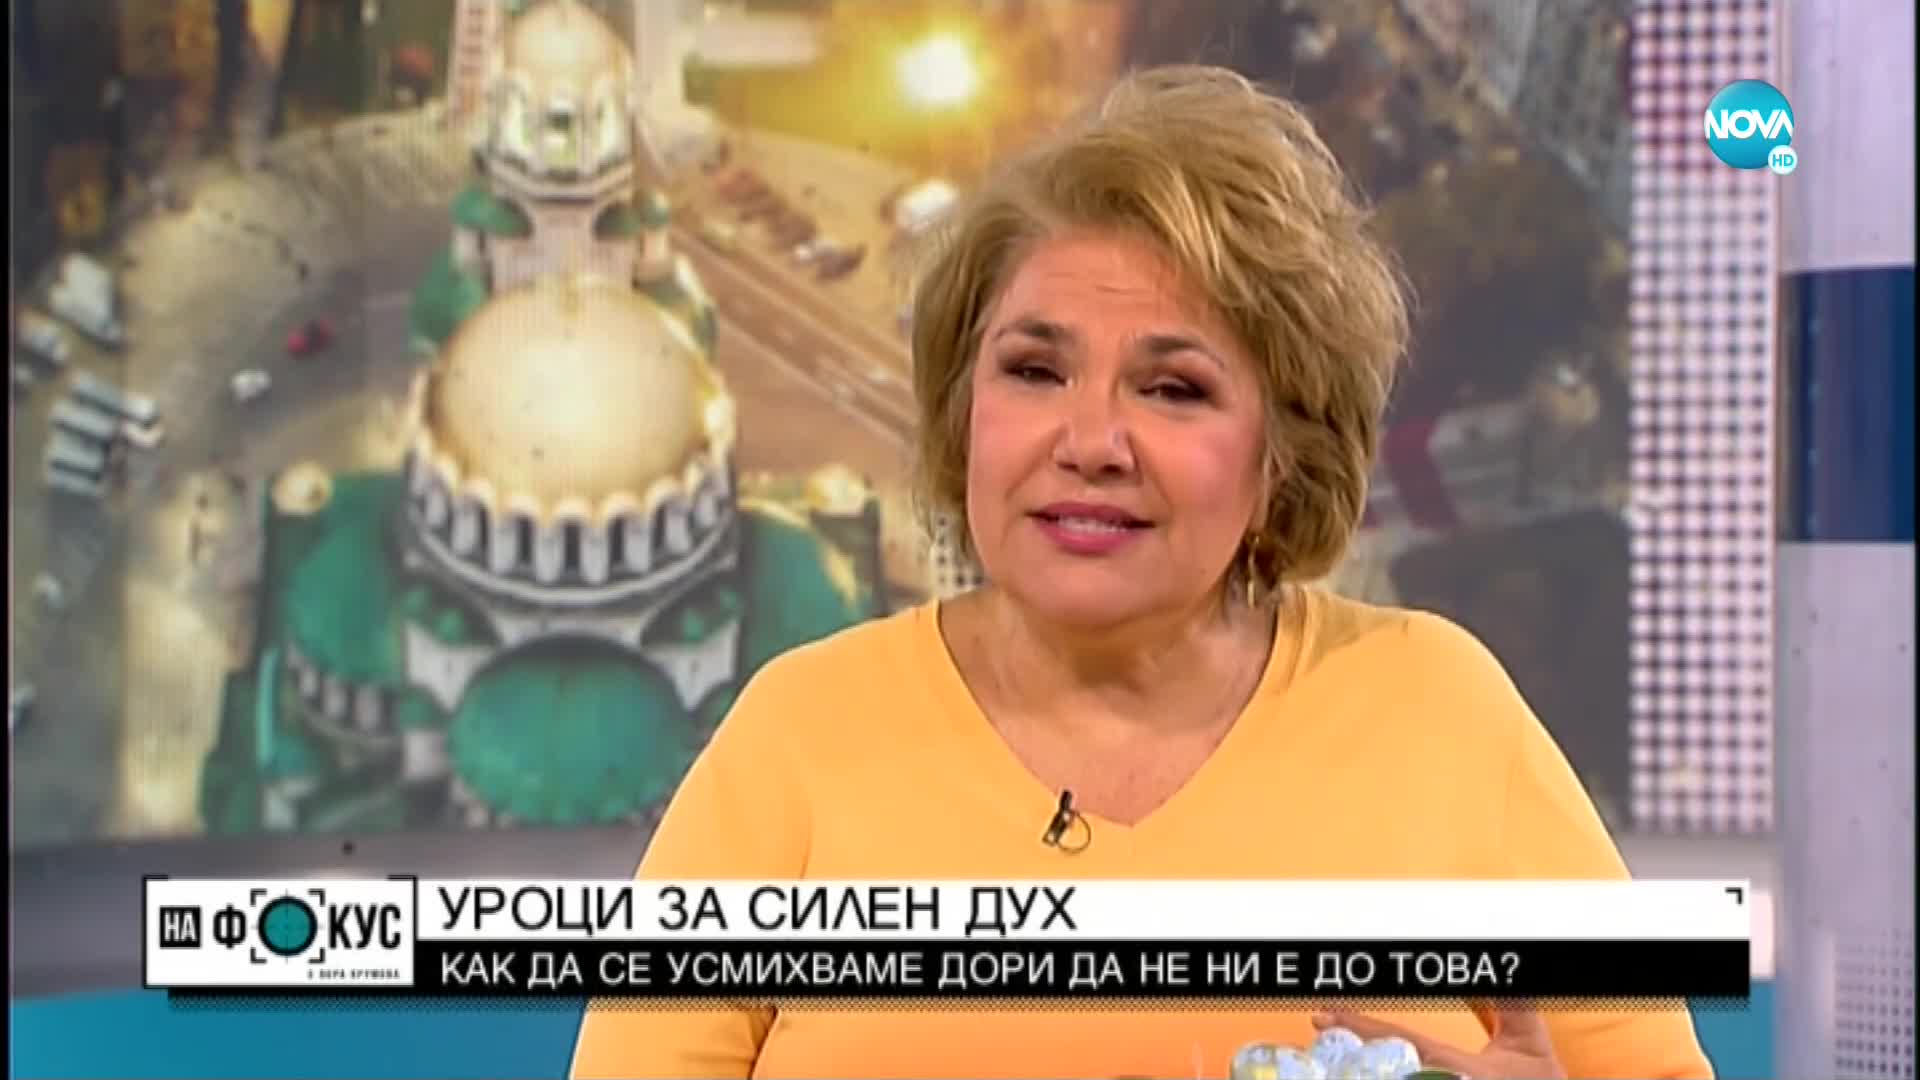 Мартина Вачкова: Великден е в душите, не в мястото, където празнуваш